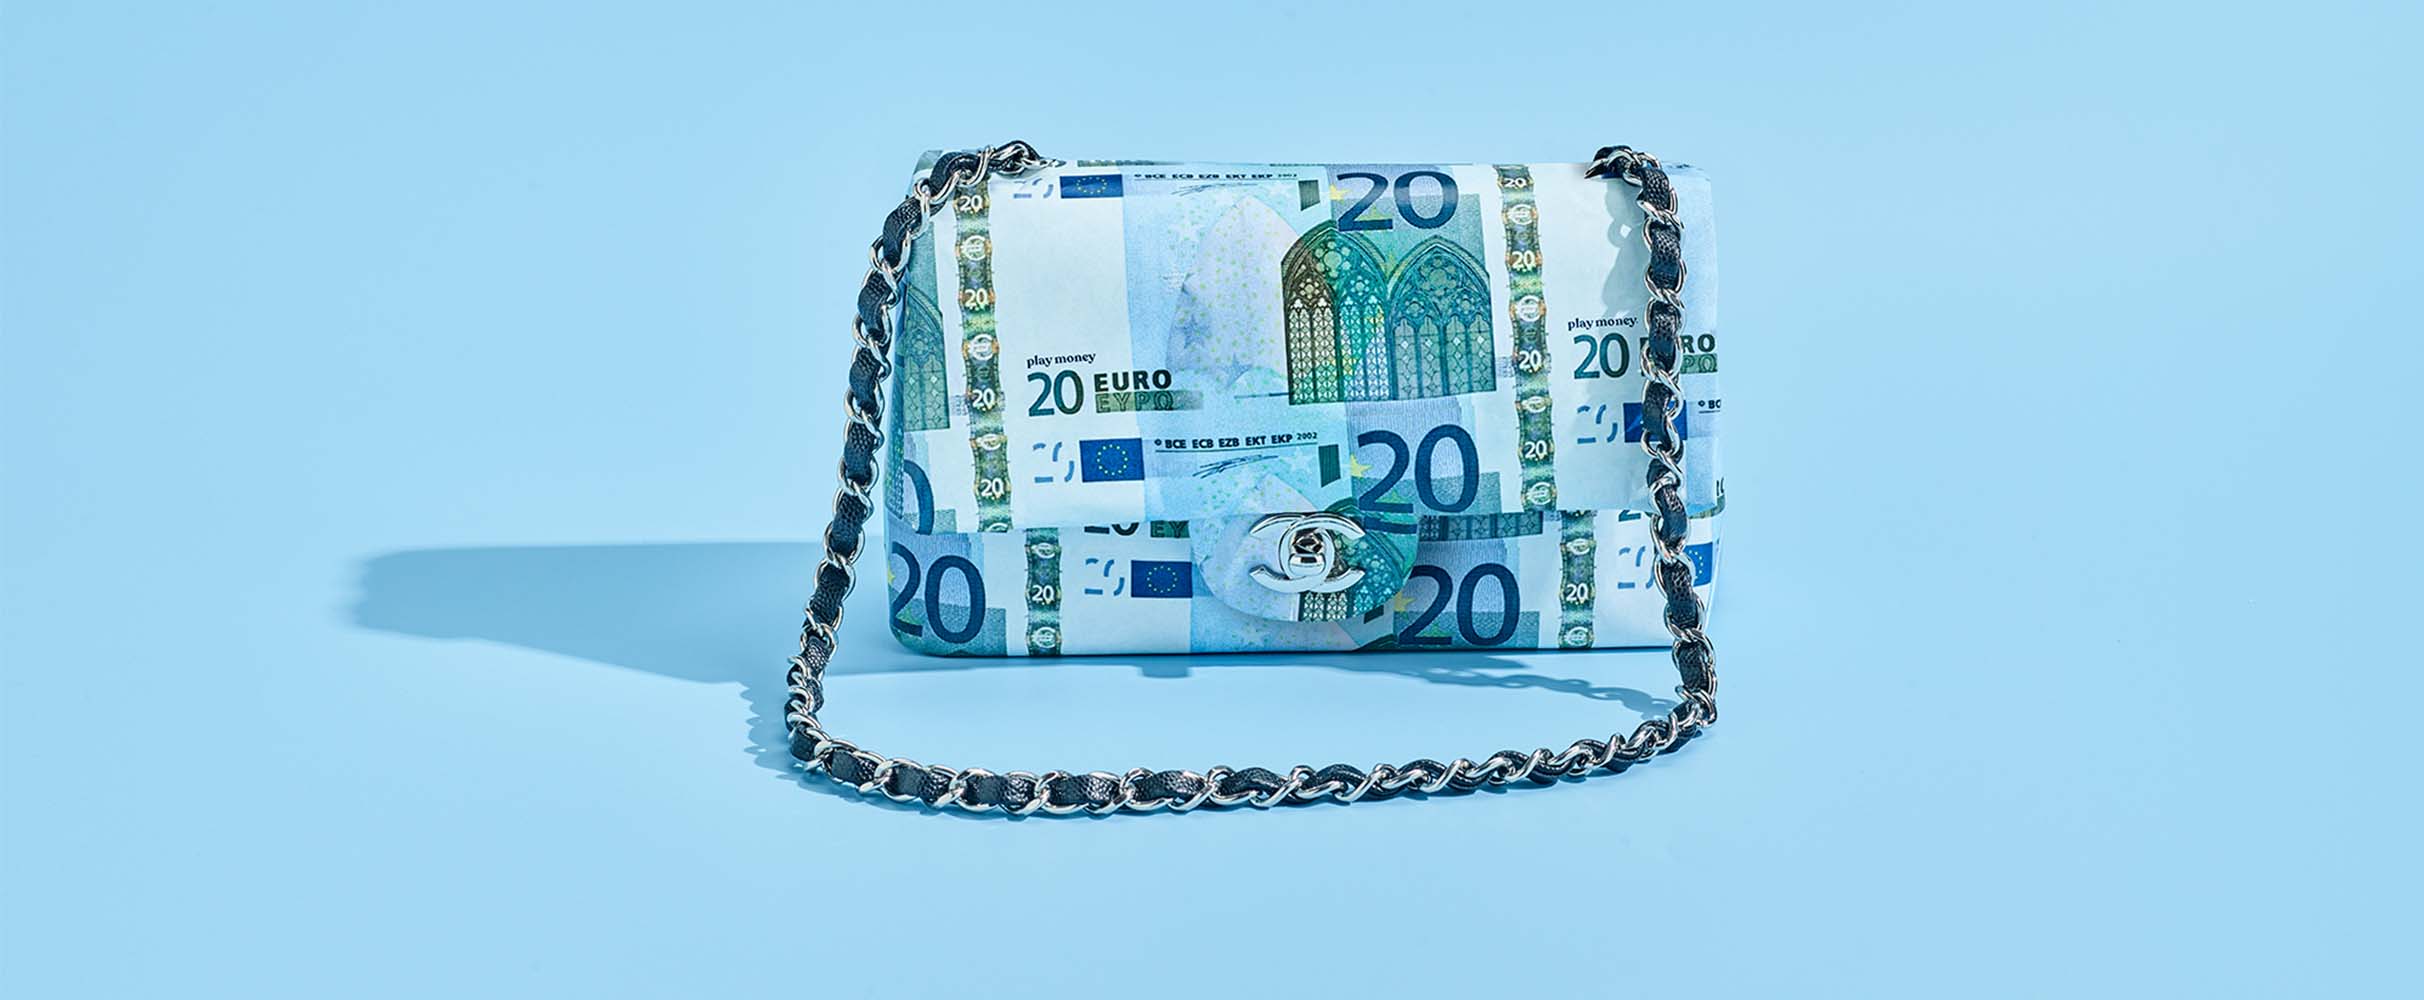 Poenpraat: 'Ik geef 550 euro per maand uit aan boodschappen'